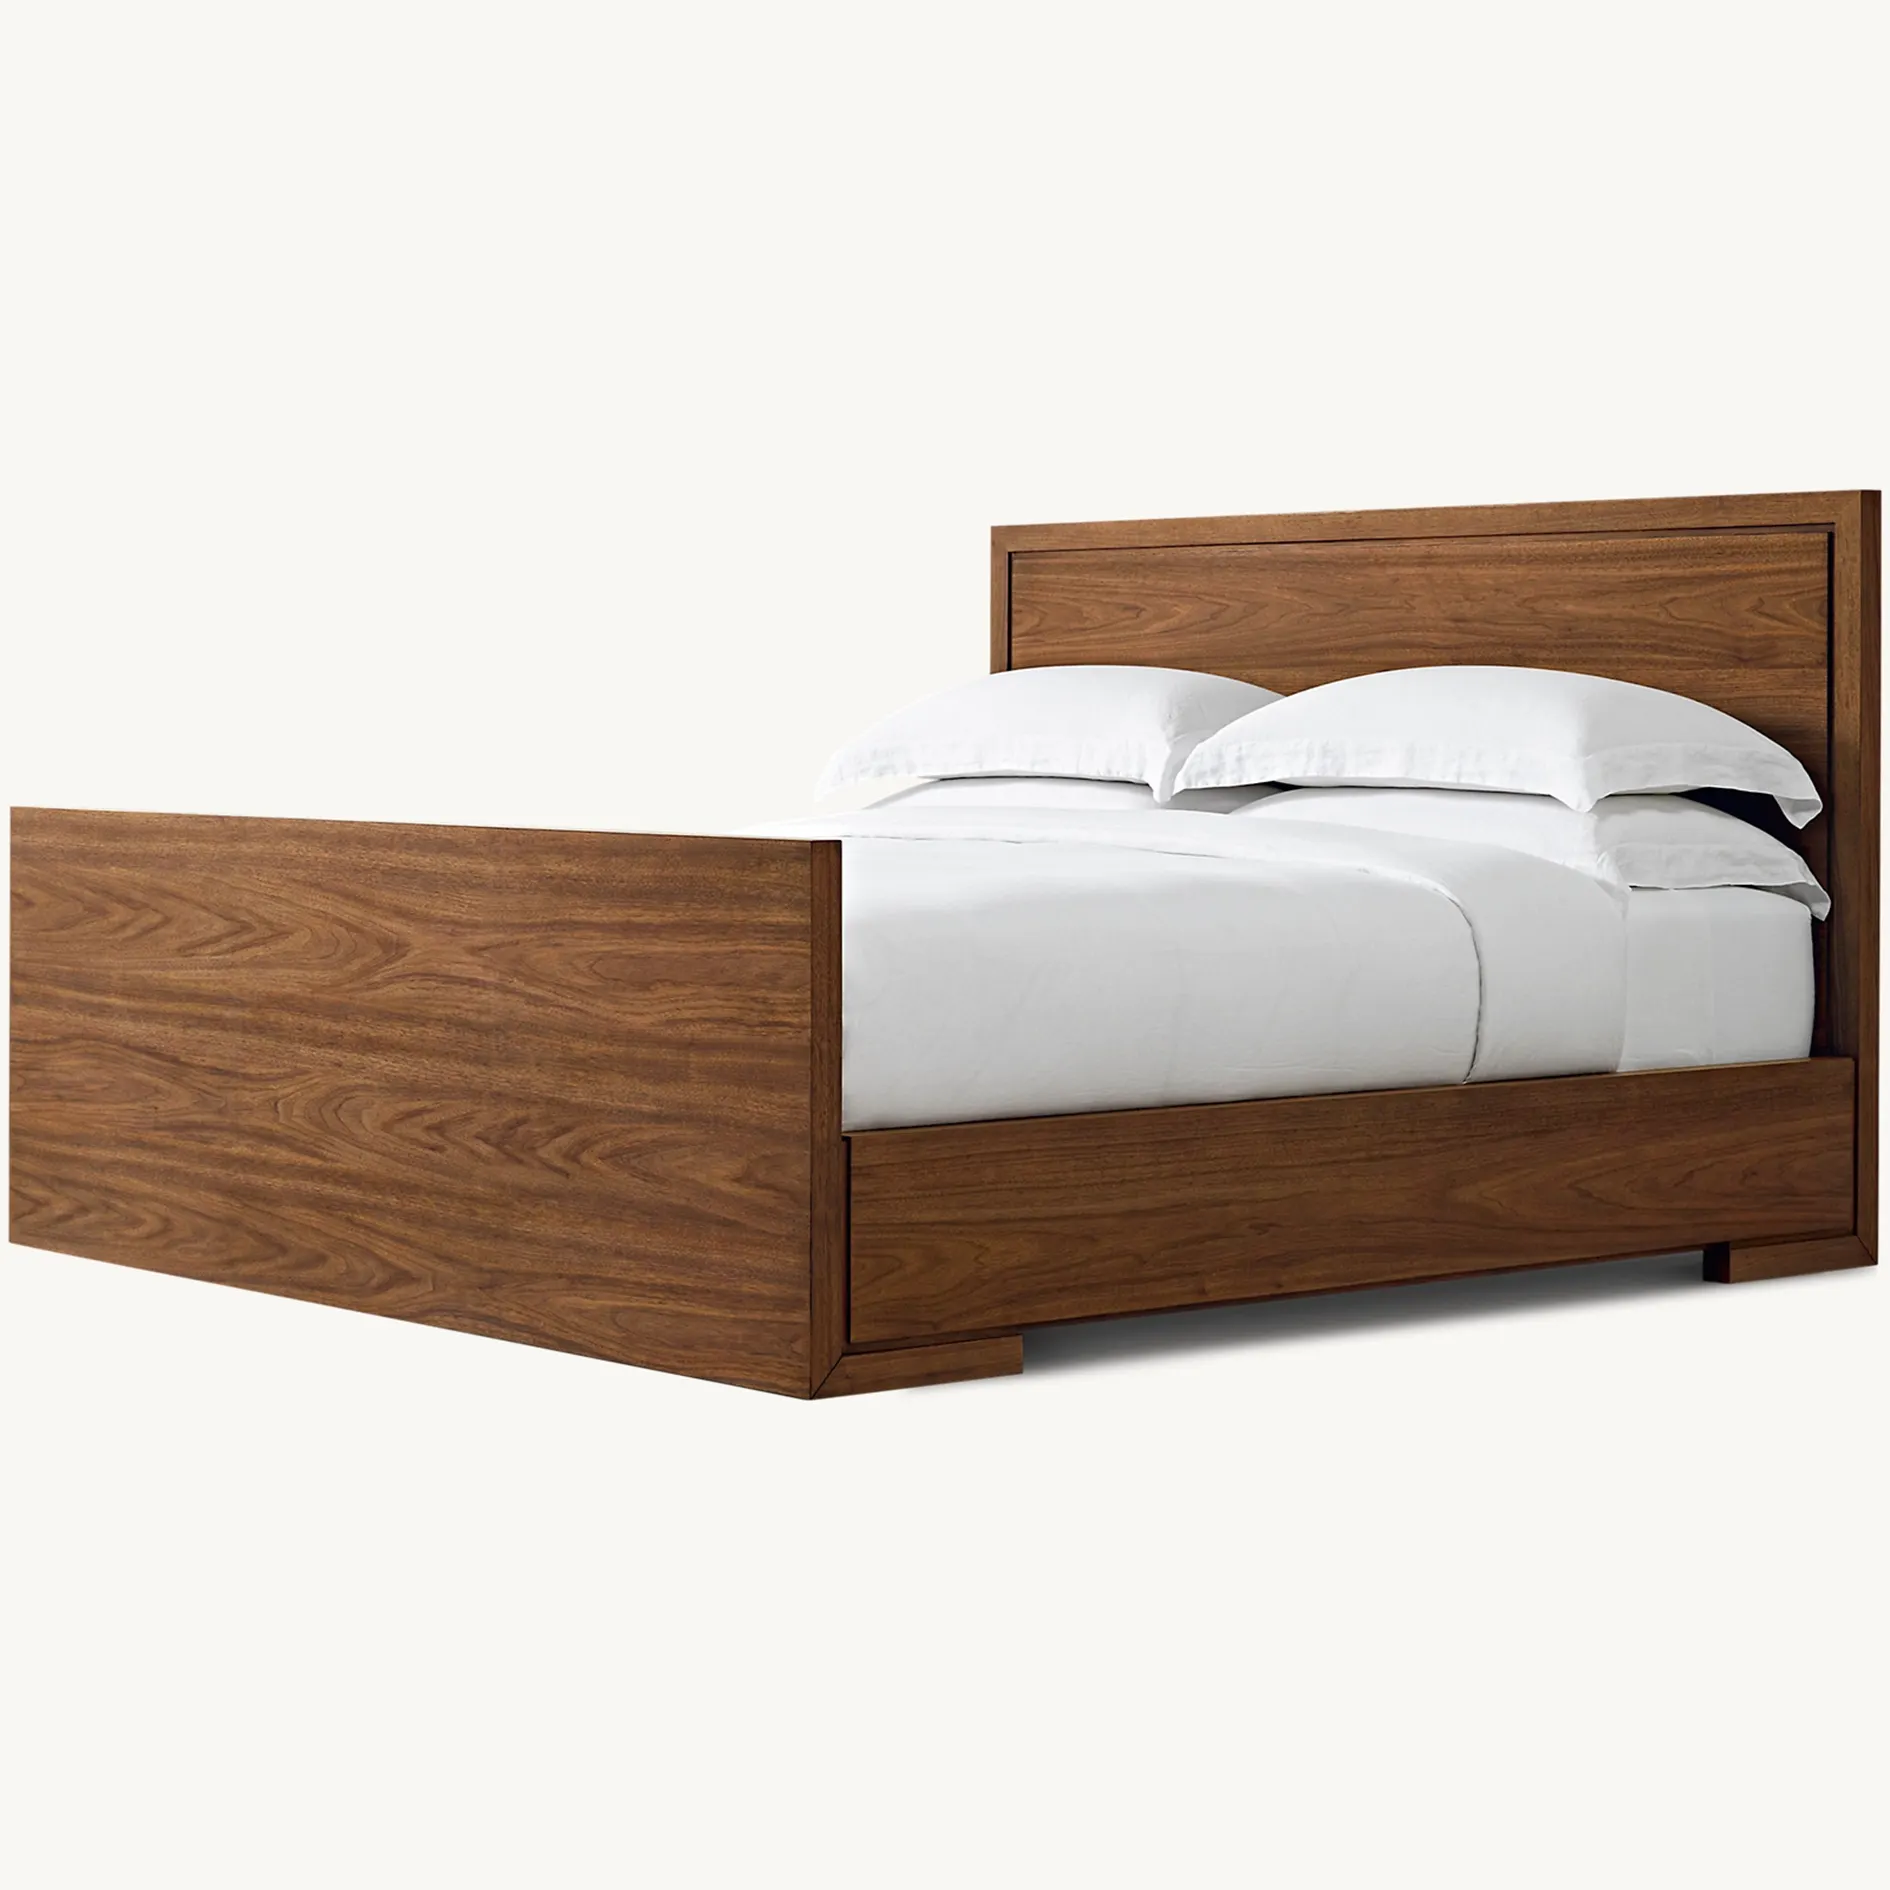 Camas king size de madeira maciça para quarto de casal de estilo moderno feitas à mão